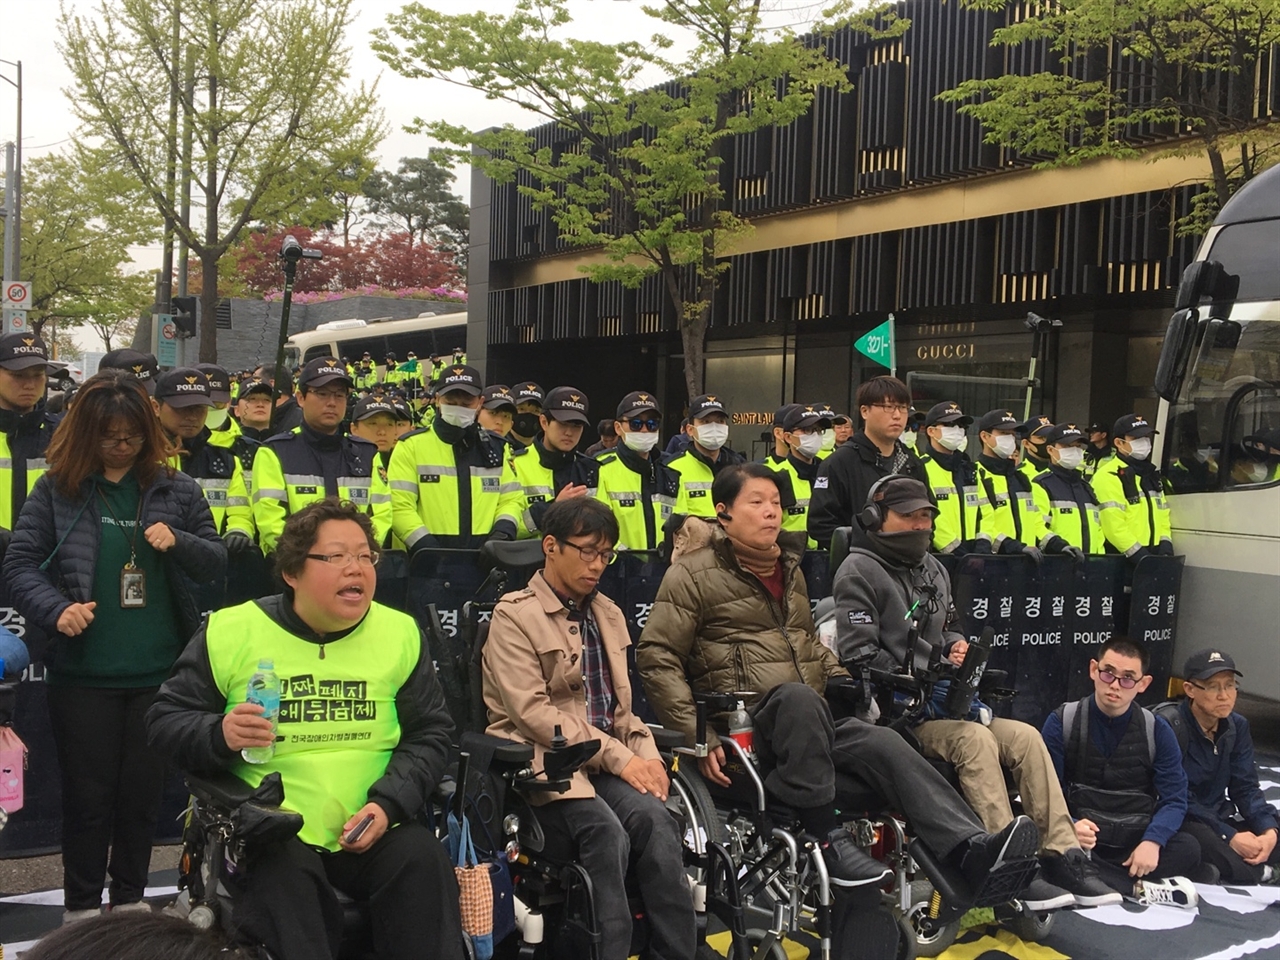 18일 오전, 63빌딩에서 열린 '장애인의 날 기념식'에 입장 저지를 받은 장애인 단체 회원들이 이를 규탄하며 도로 점거 및 농성을 이어가고 있다.